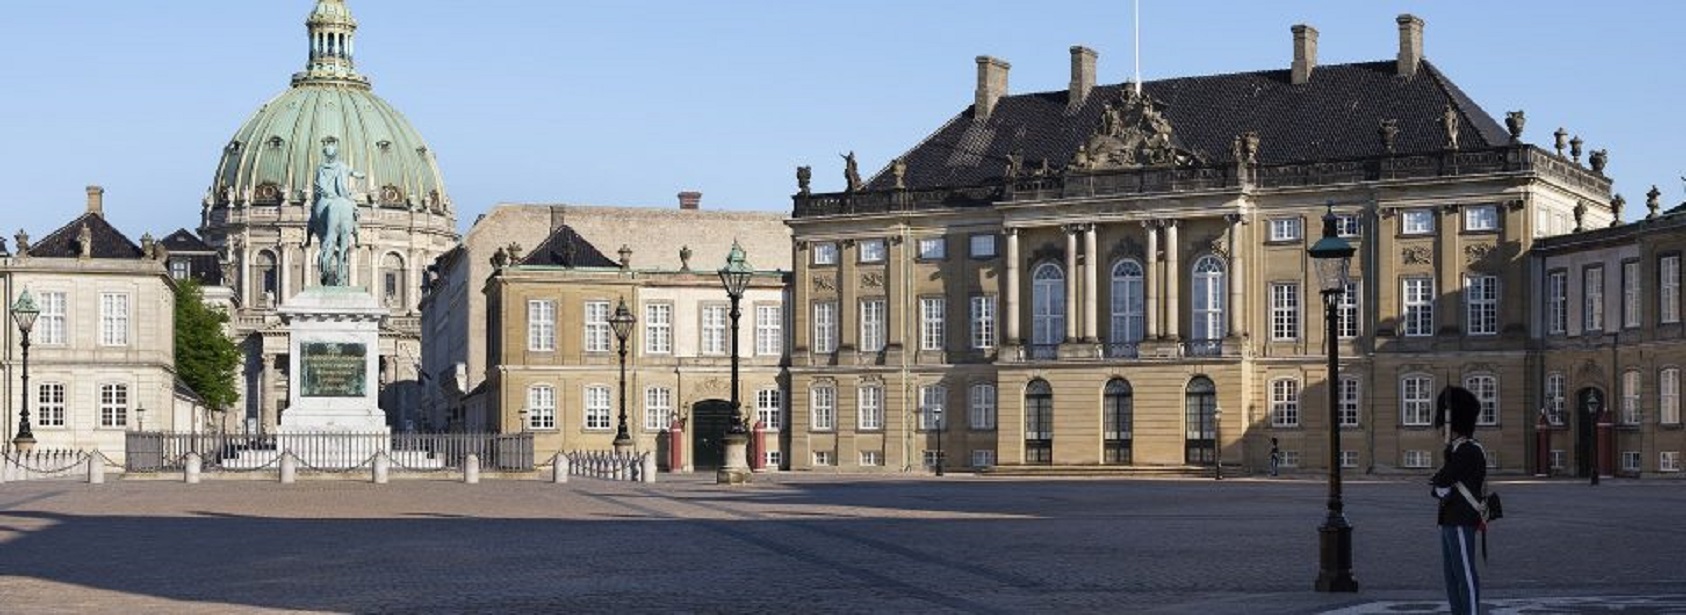 Amalienborg Slotsmuseum - guidet rundtur og frokost i restaurant Amalie